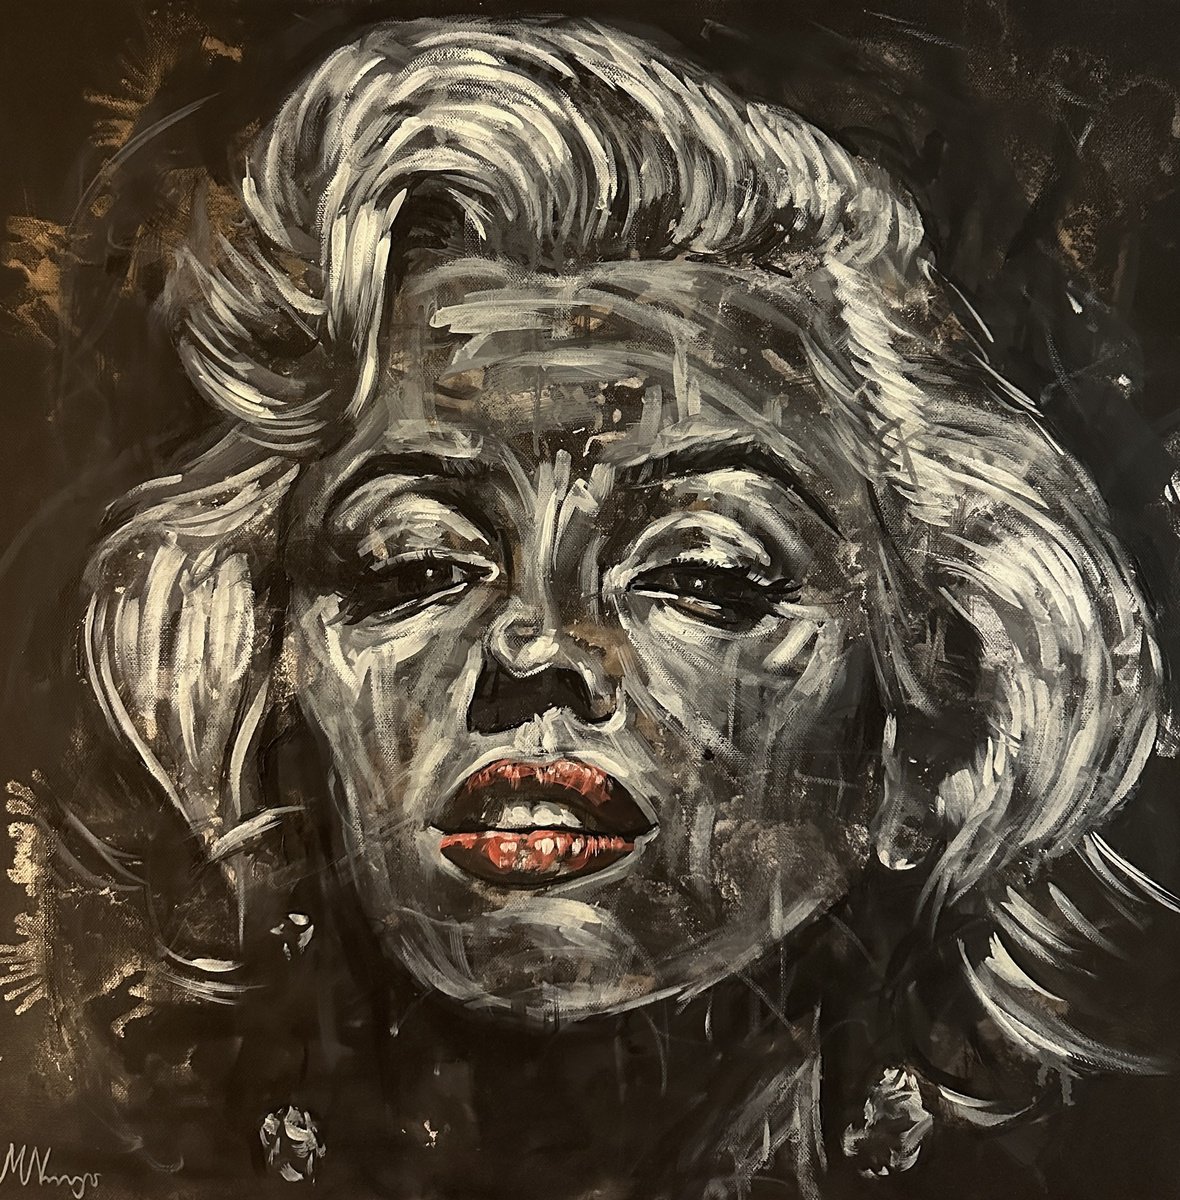 Marilyn Monroe portrait by Emmanouil Nanouris